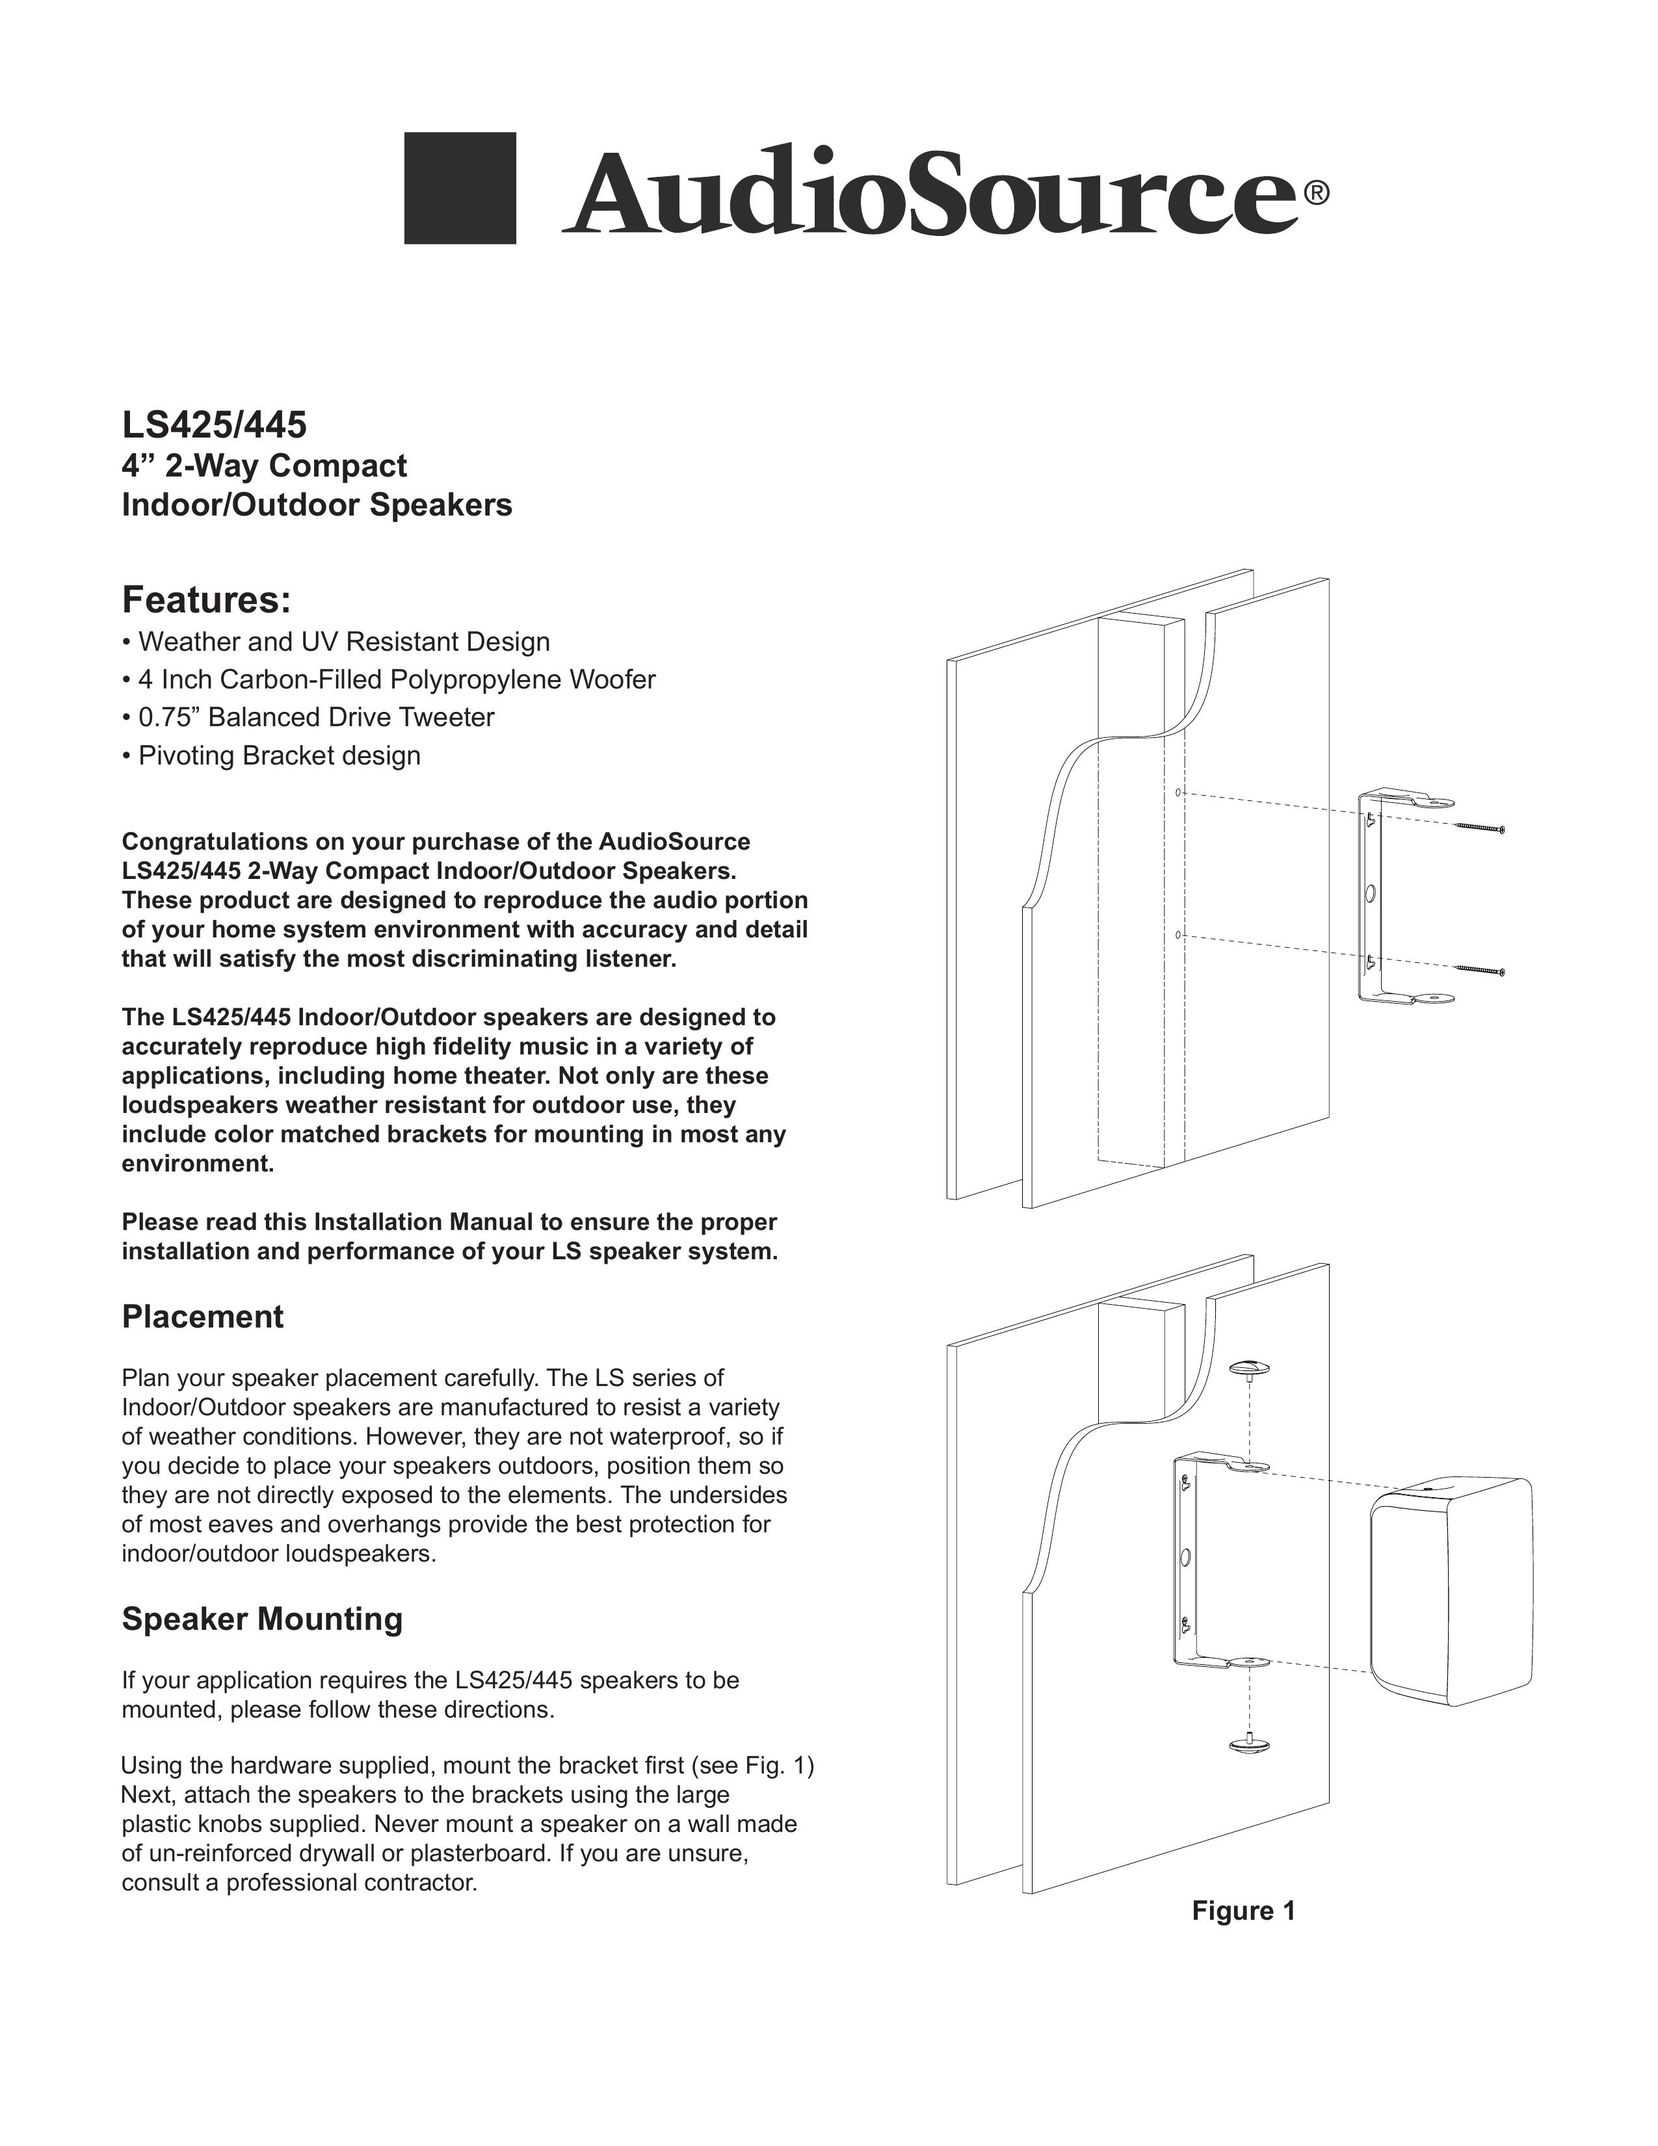 AudioSource 2-Way Compact Indoor/Outdoor Speakers Speaker User Manual